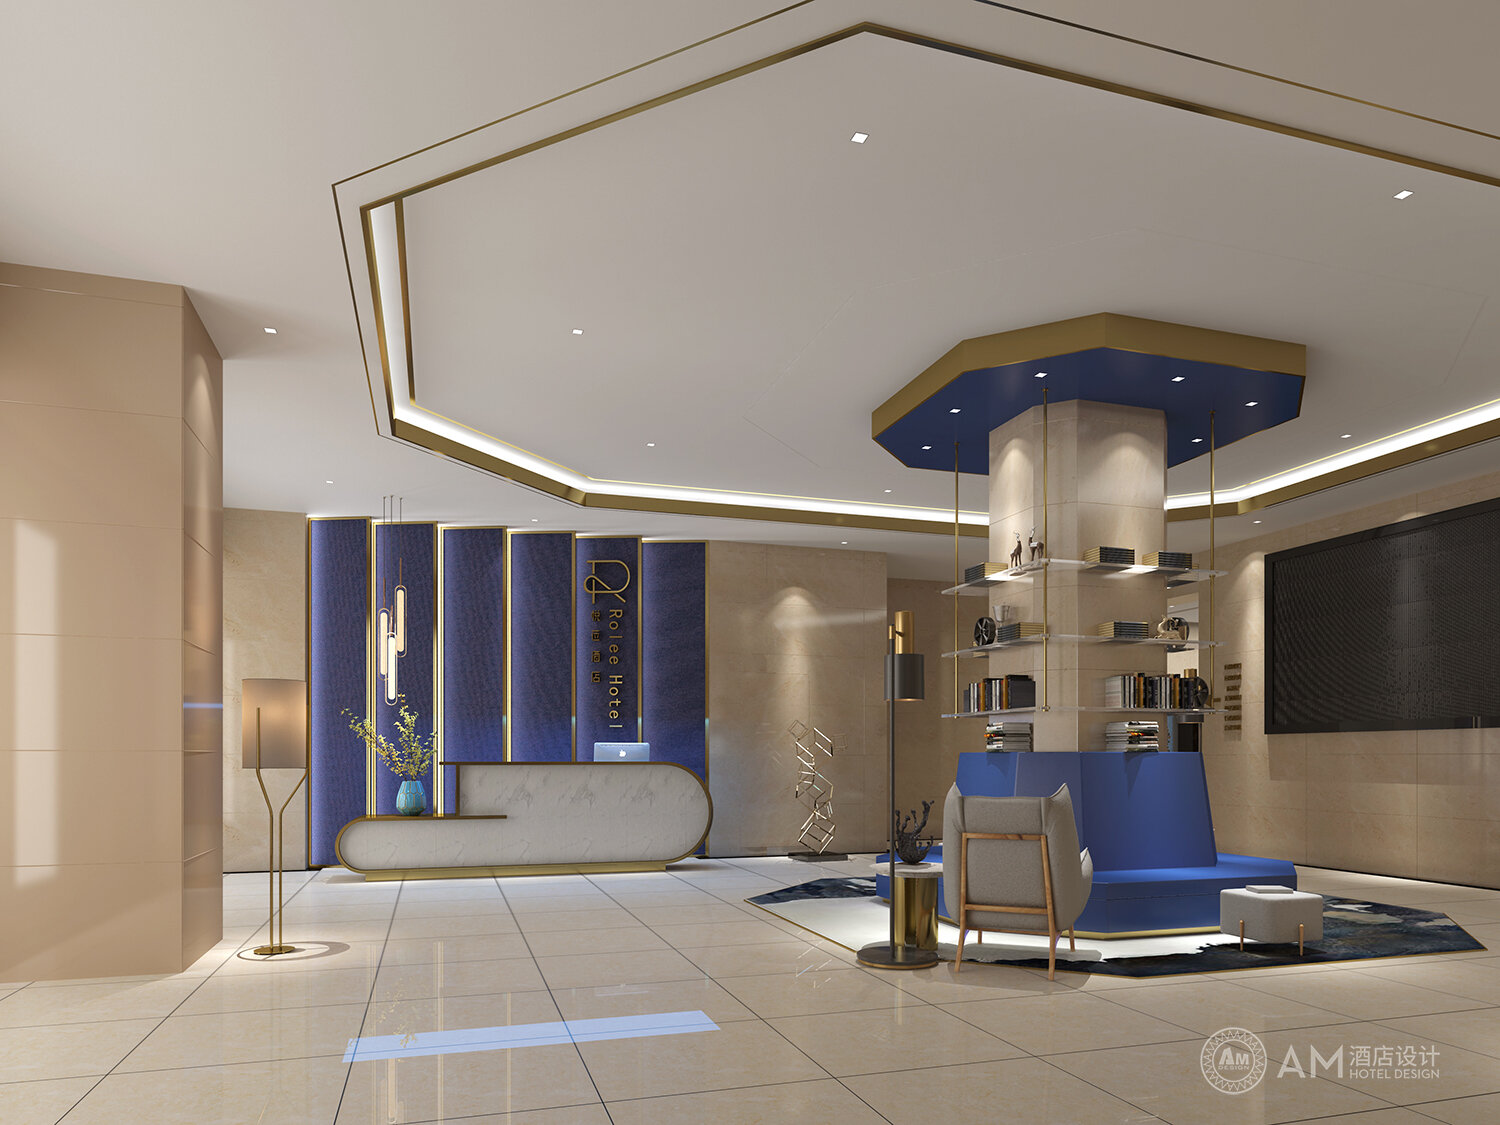 Am | yuelai Hotel Design